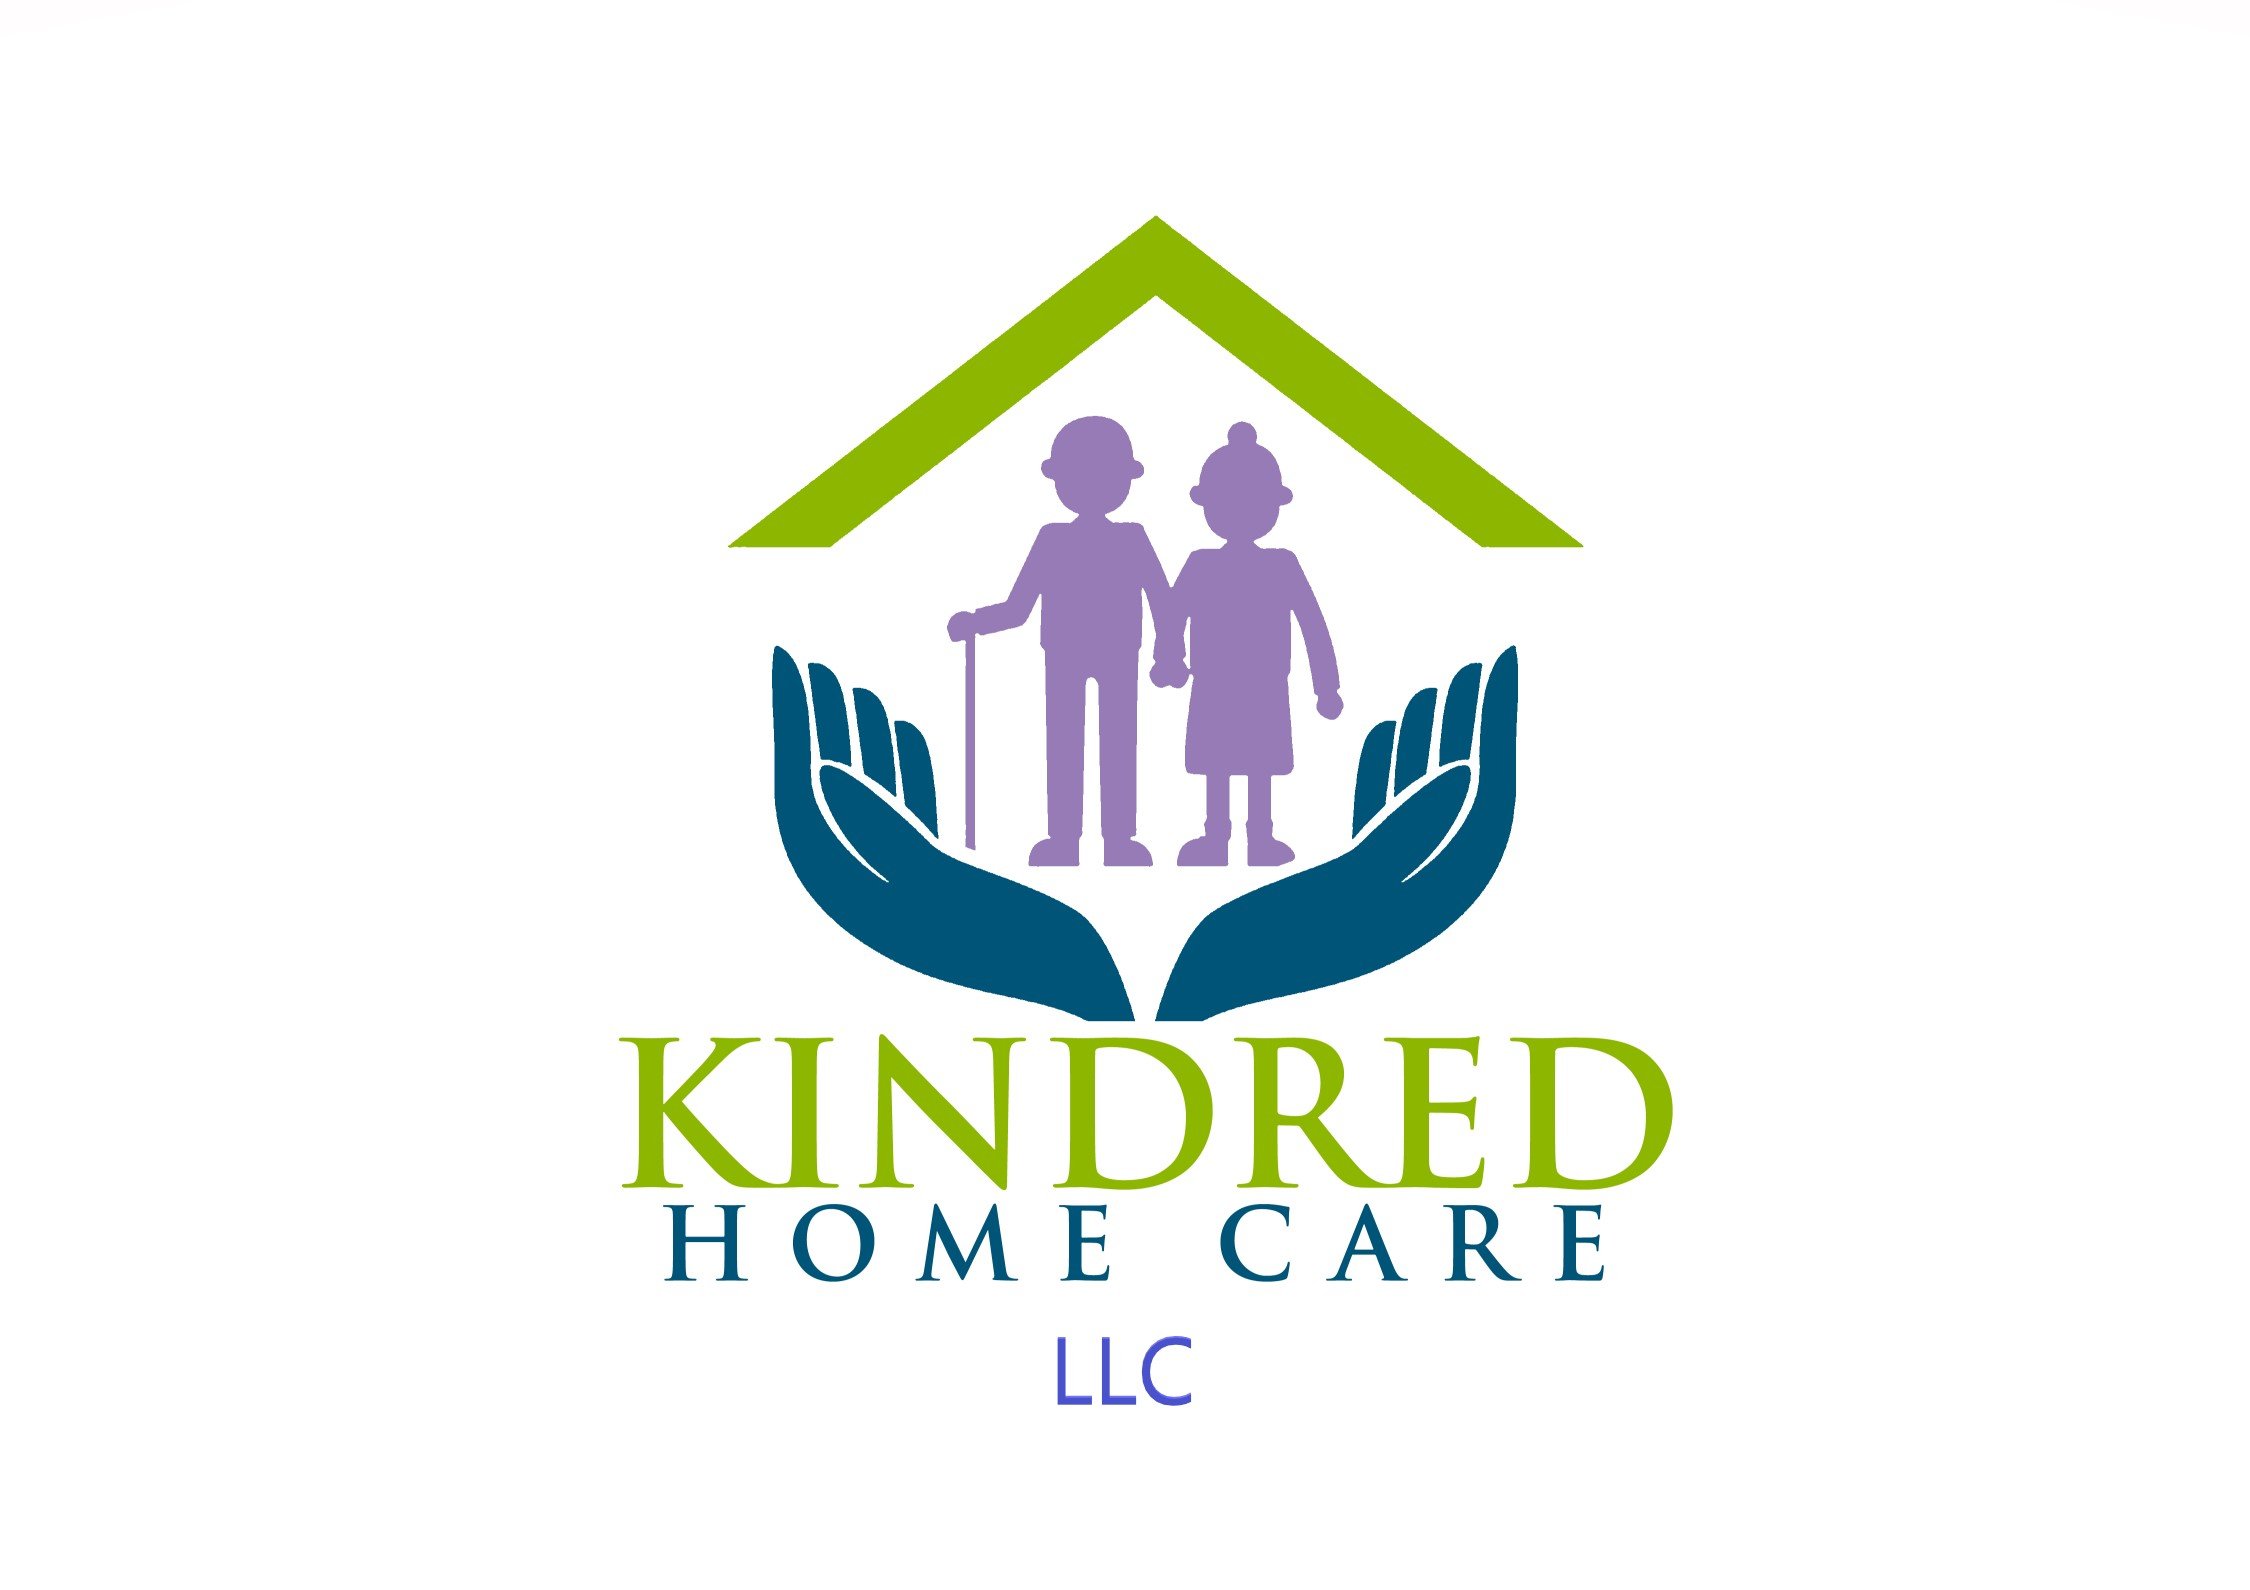 kindred home care llc - kindred home care llc